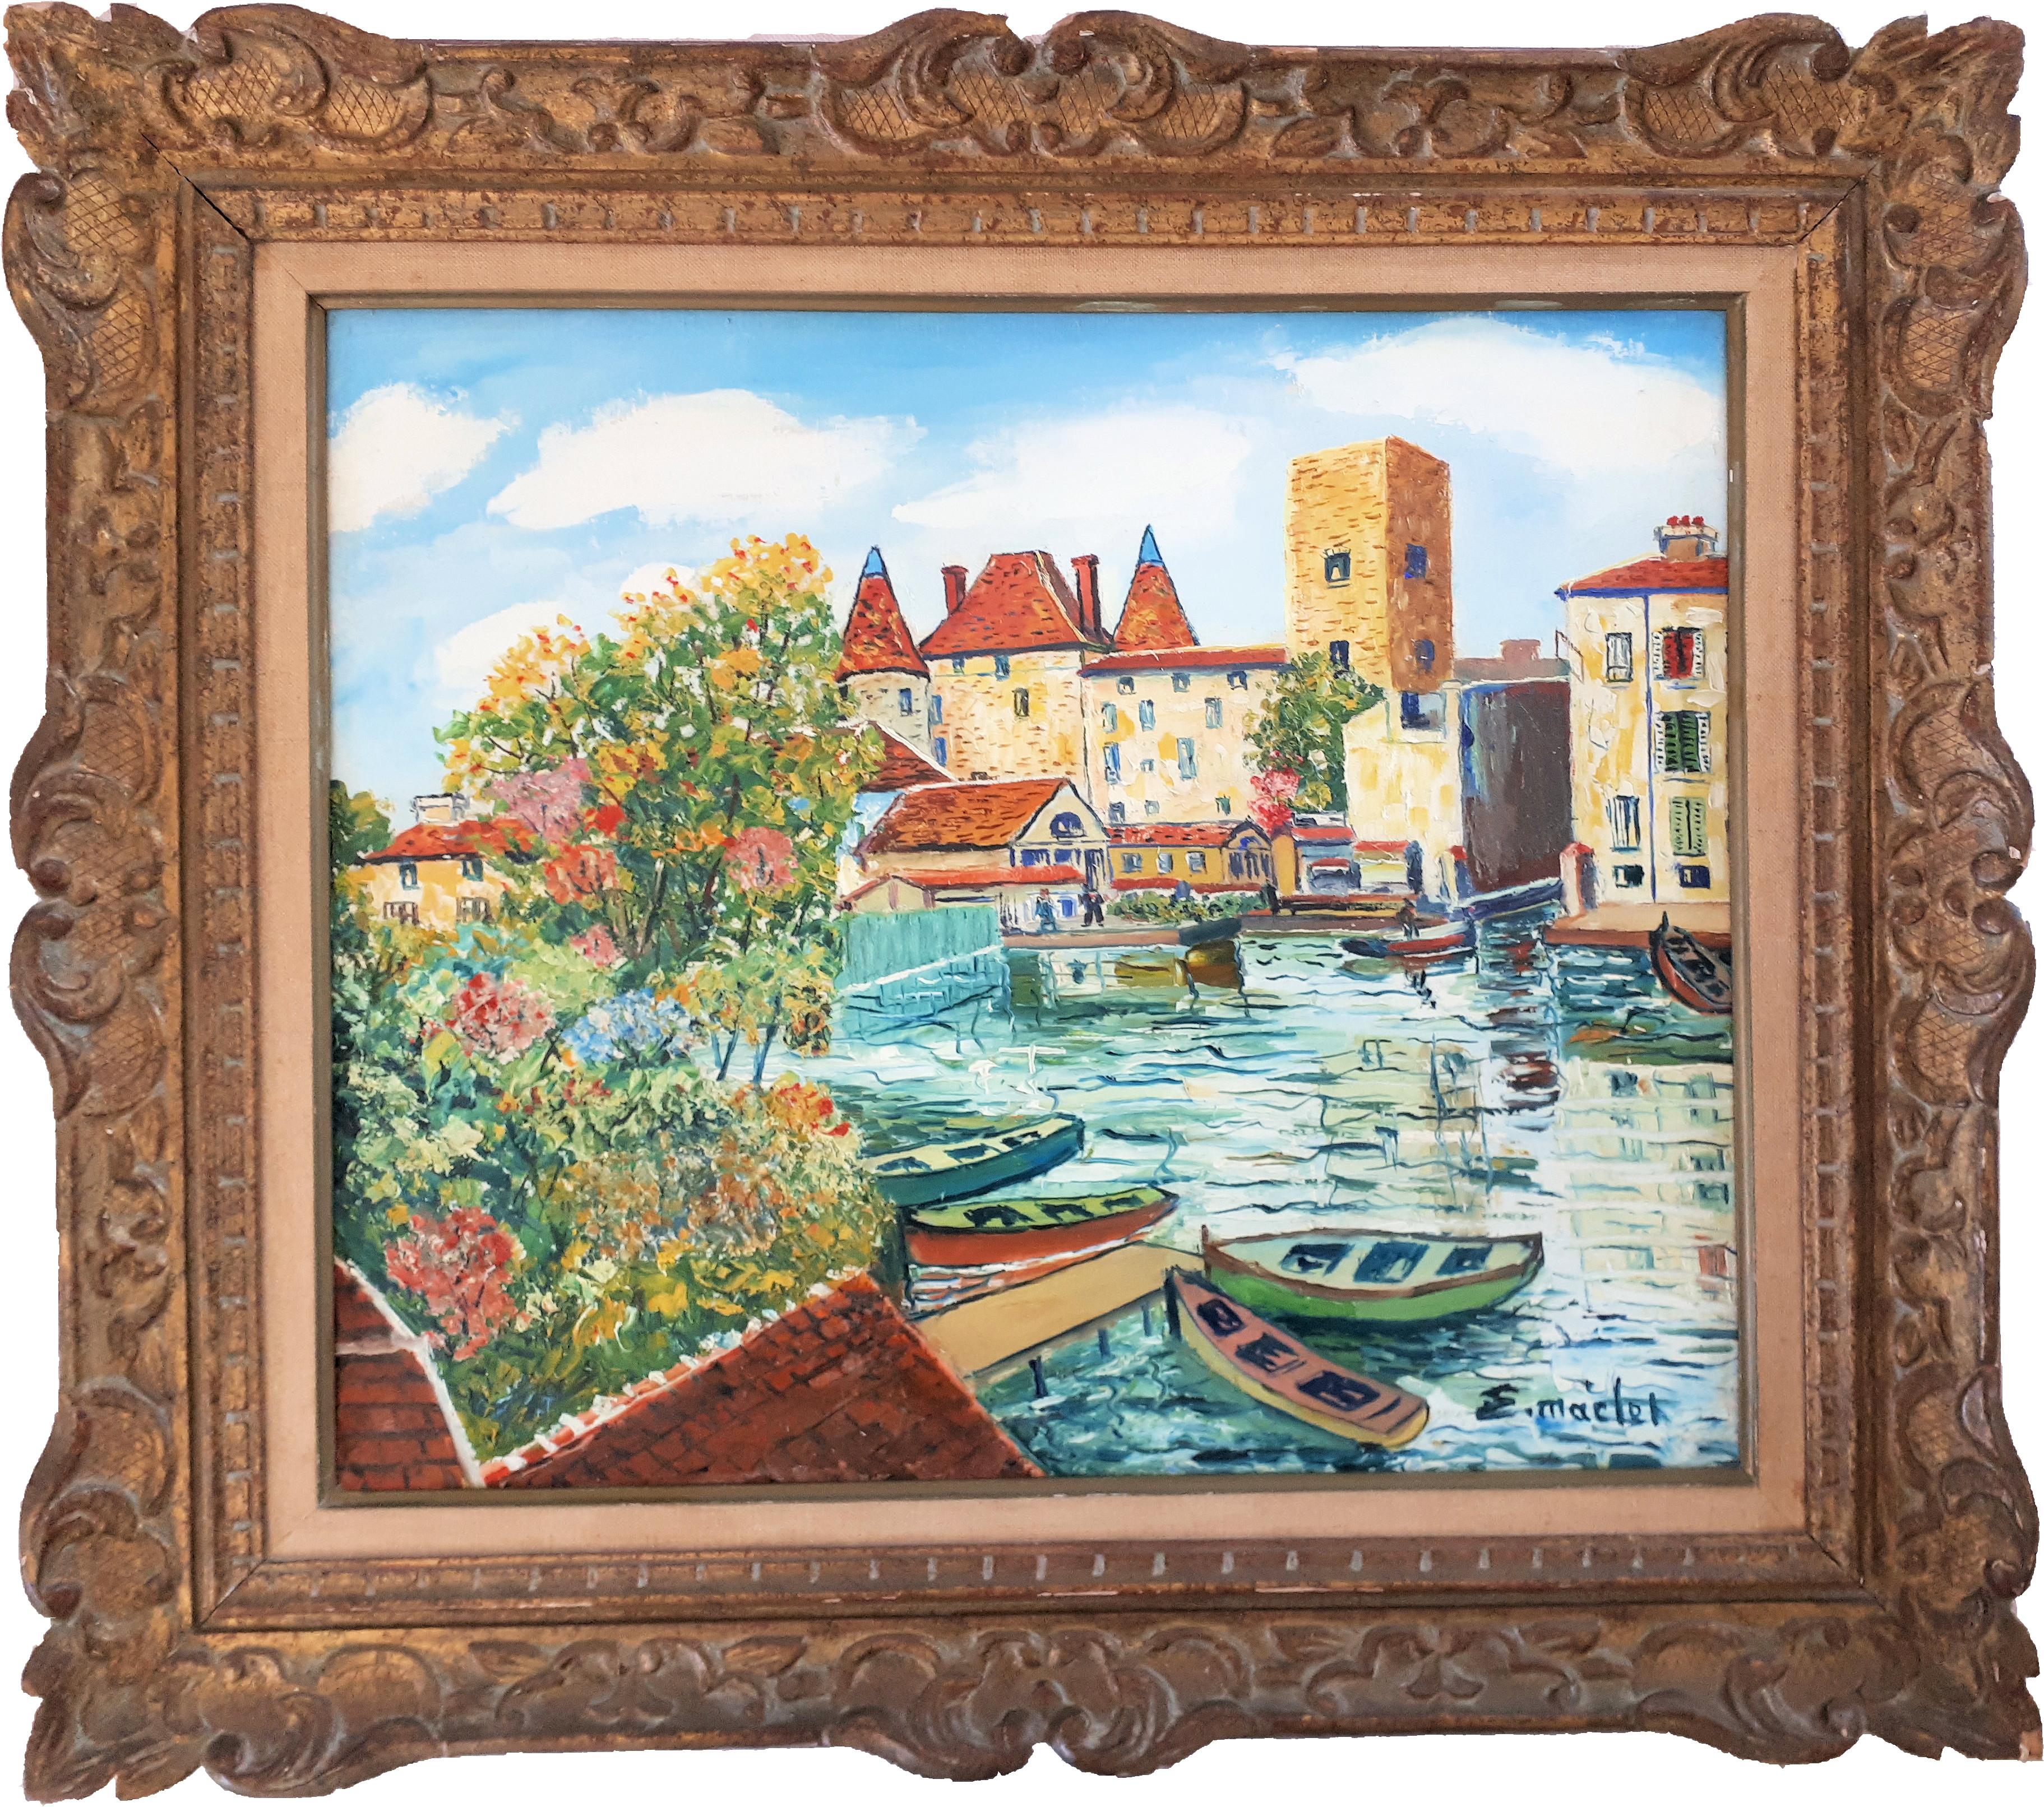 Elisée Maclet Landscape Painting - Nemours (Little Venice in France) - Original oil on canvas - Signed